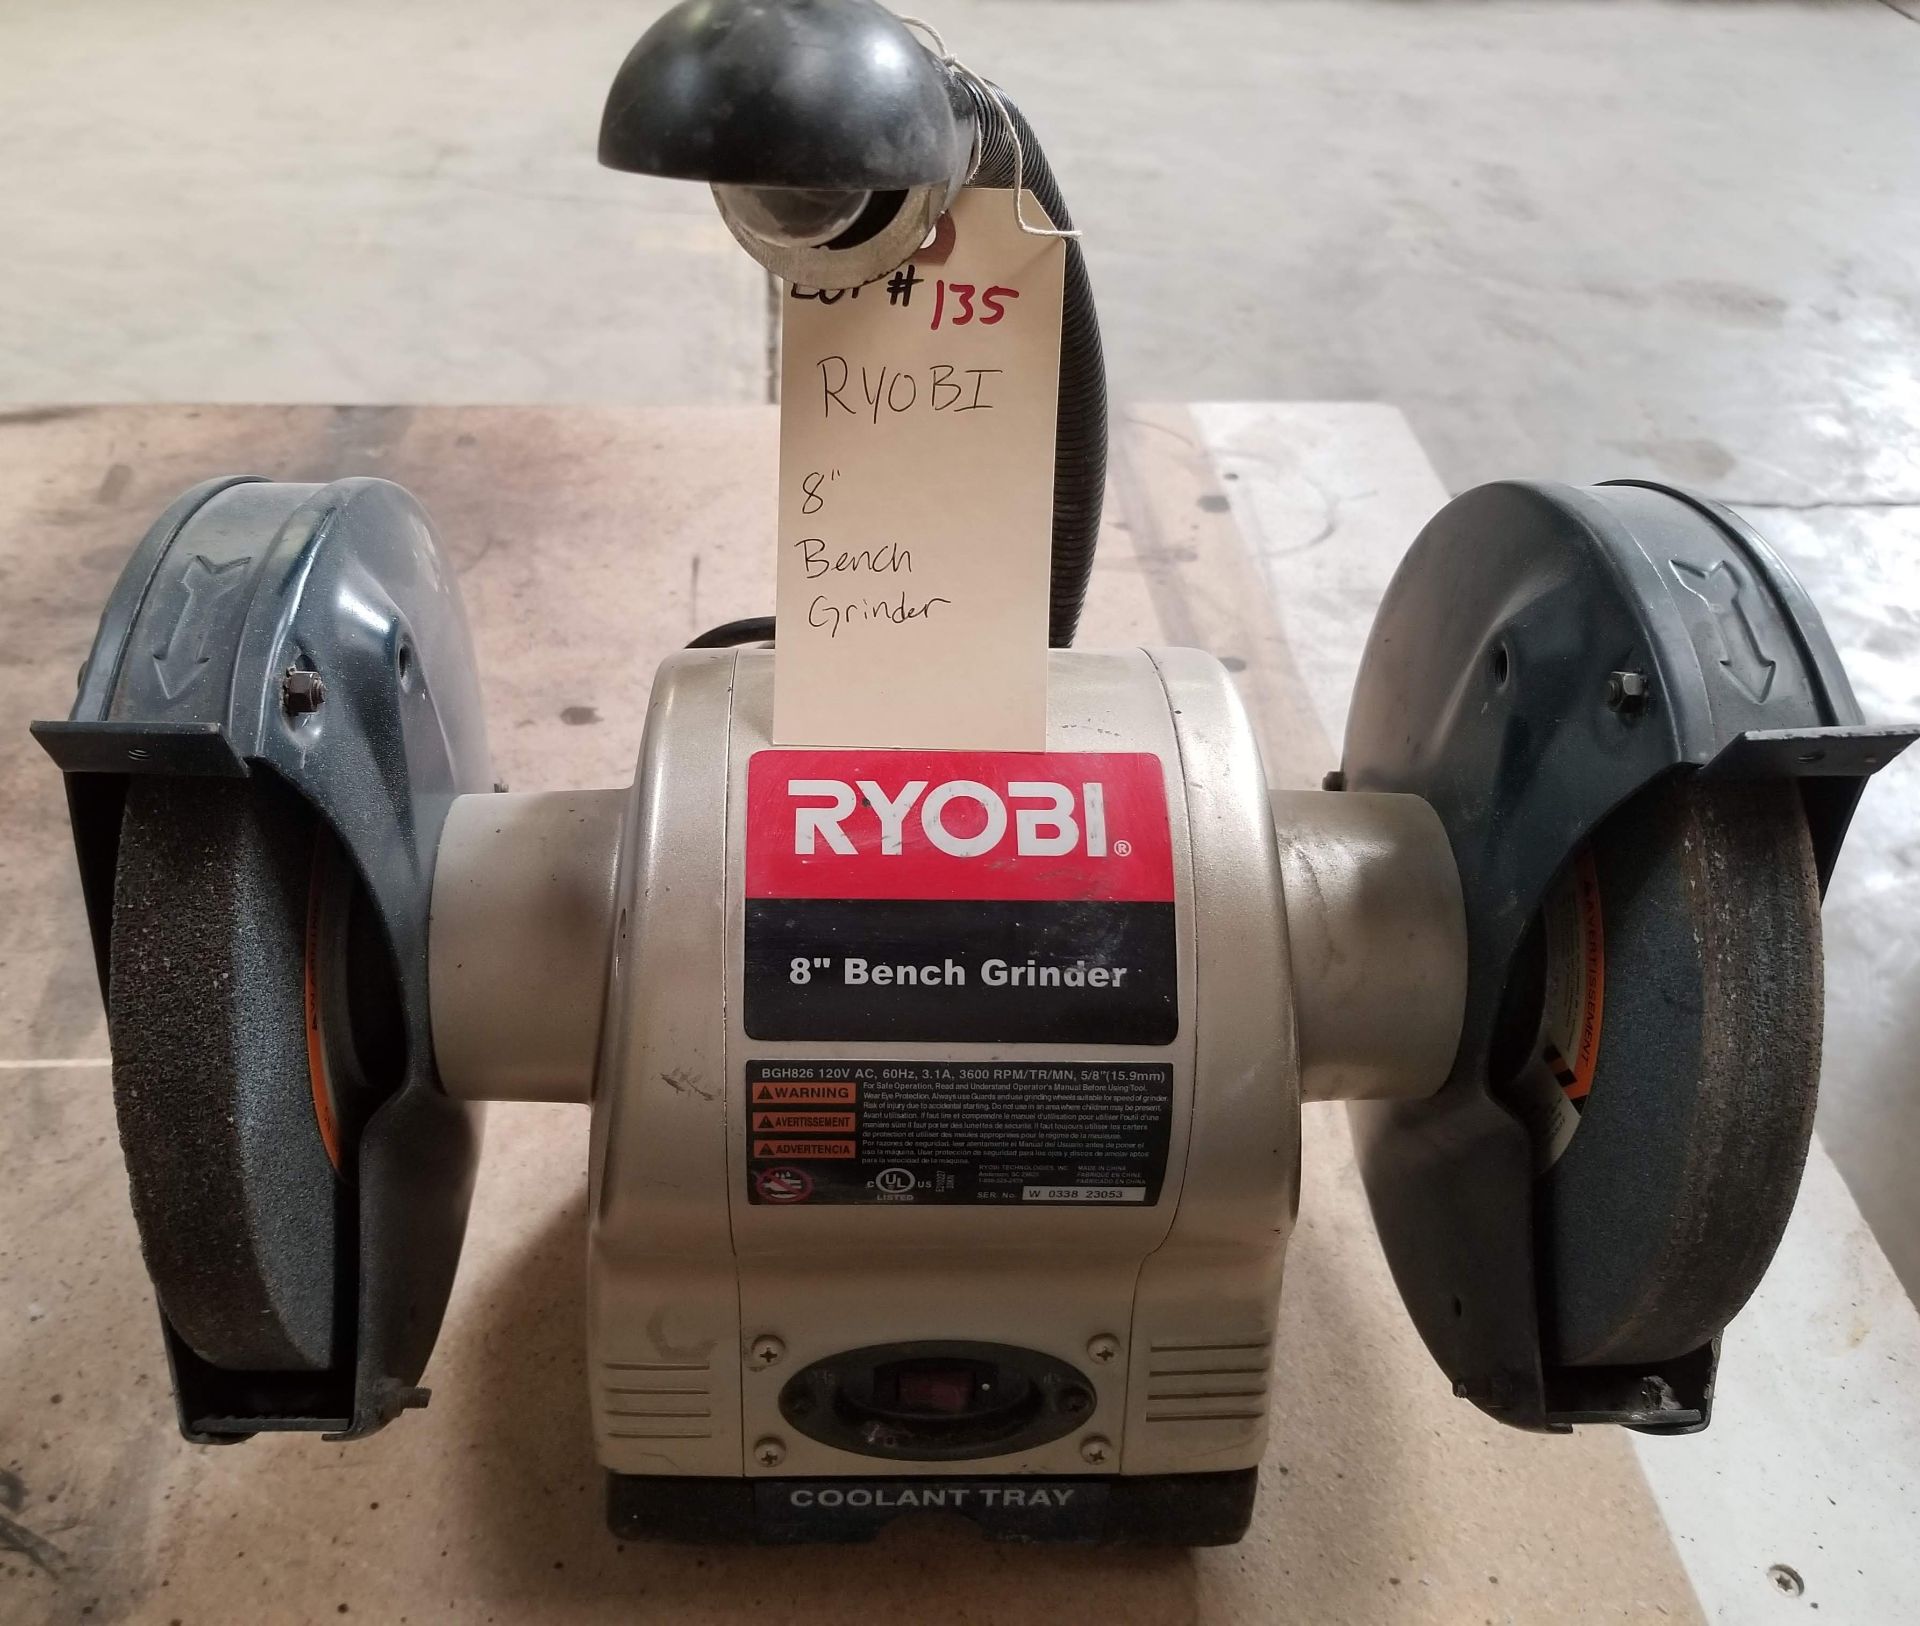 RYOBI 8" Bench Grinder, Model # BGH826 120V